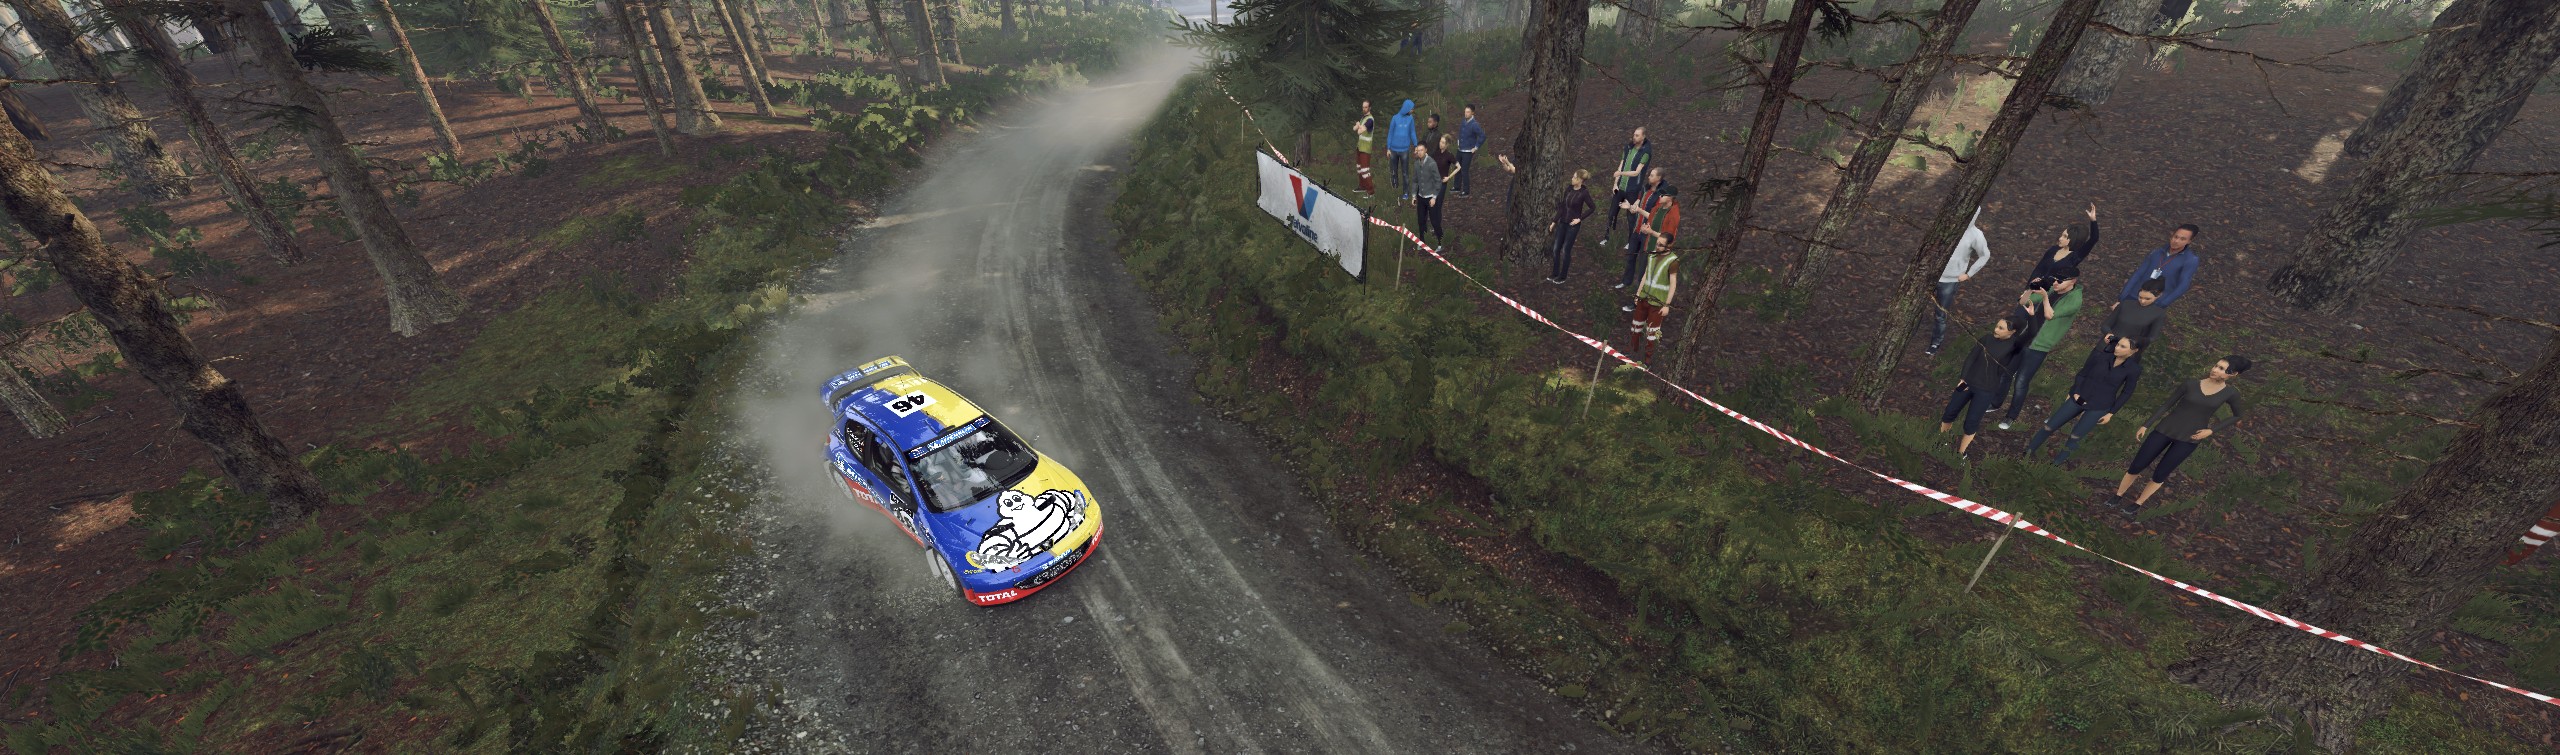 Peugeot 206 WRC Rossi livery